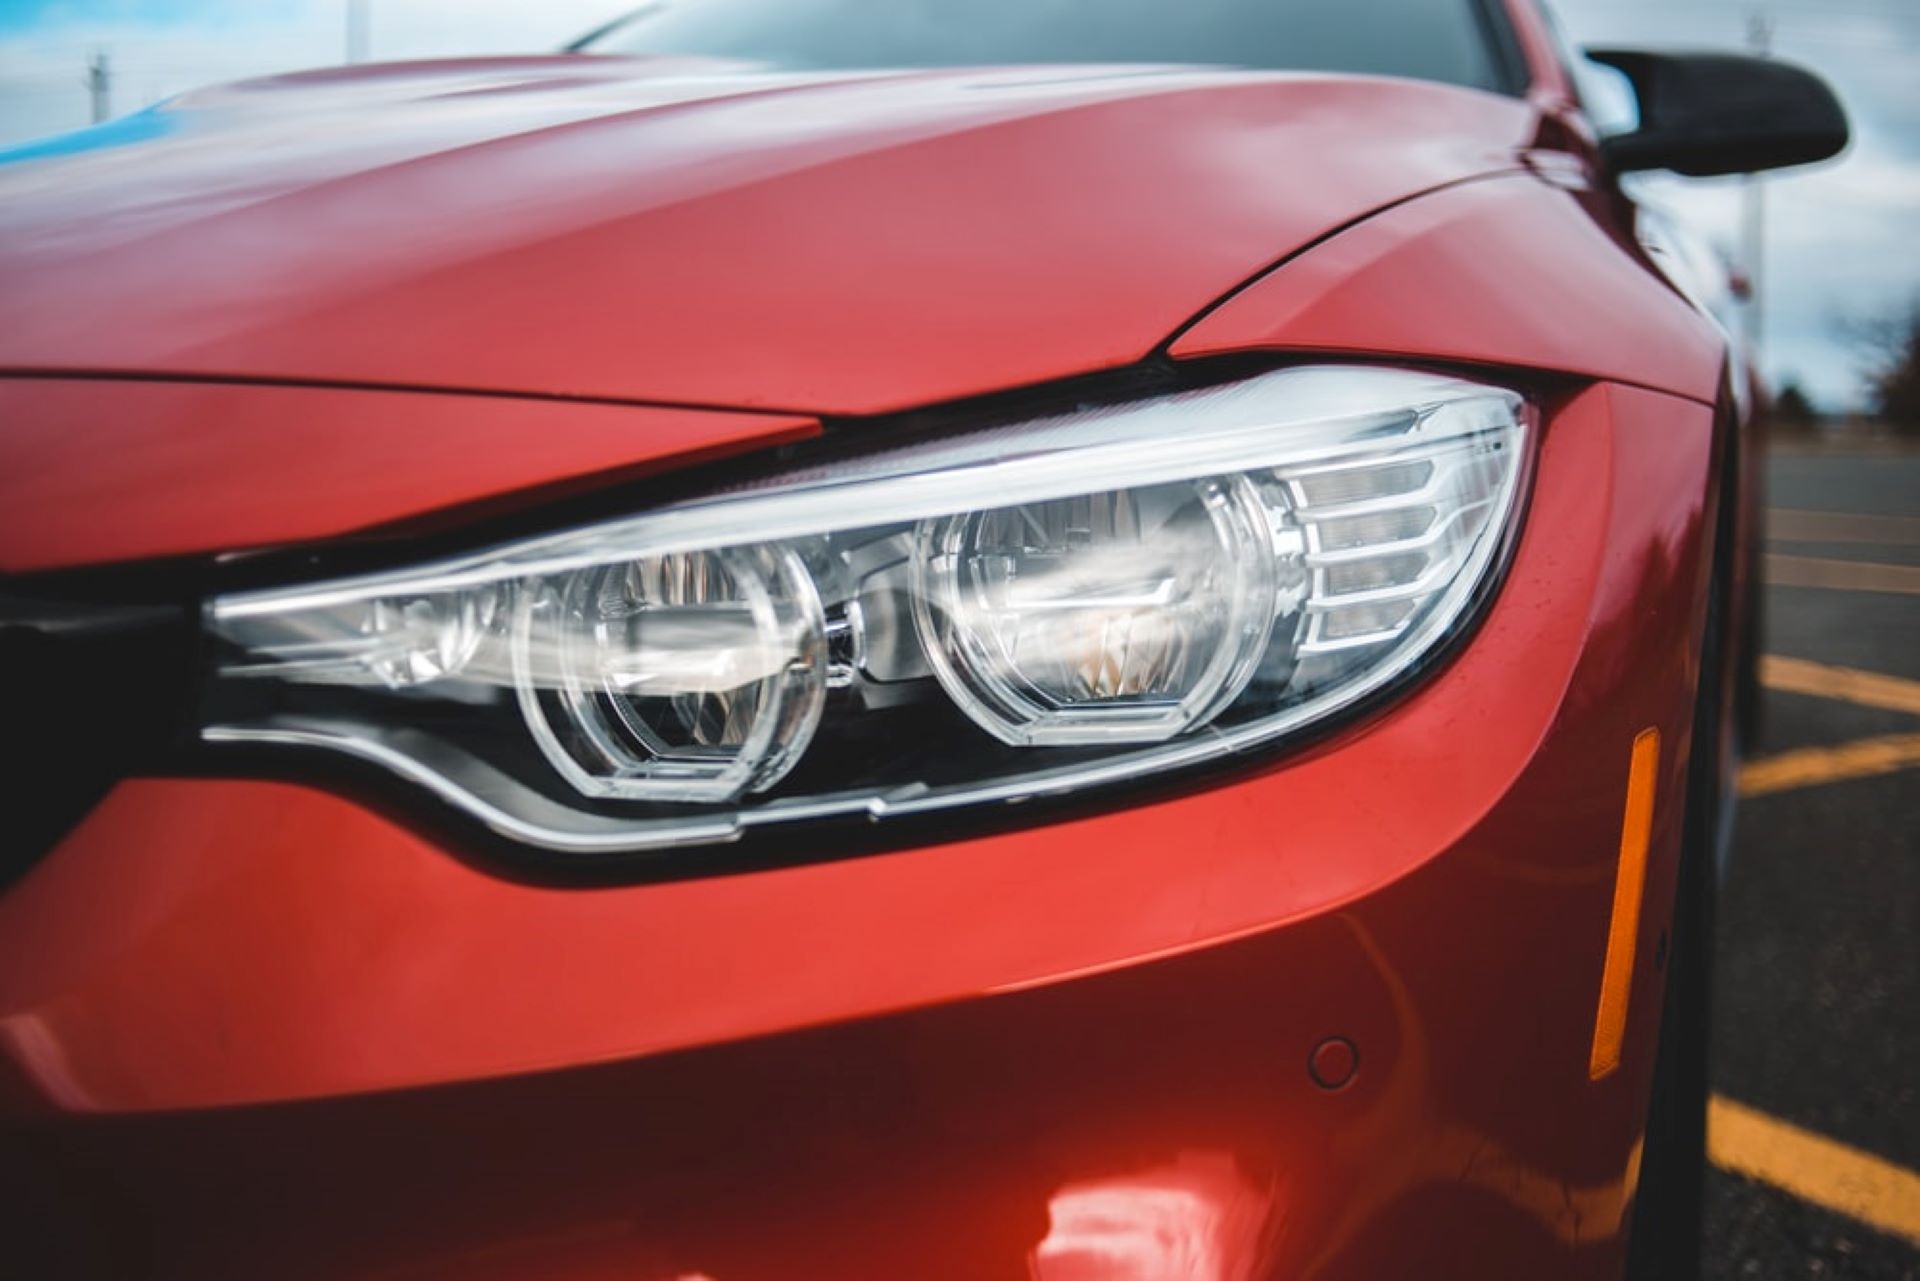 Frontpartie eines roten Autos, wobei der Fokus auf den rechten Frontscheinwerfer gerichtet ist. Die Scheinwerfer sind modern gestaltet, wahrscheinlich mit LED- oder Xenon-Technologie, und befinden sich in einem klaren und gut definierten Gehäuse, das nahtlos in die Karosserie des Fahrzeugs integriert ist. 